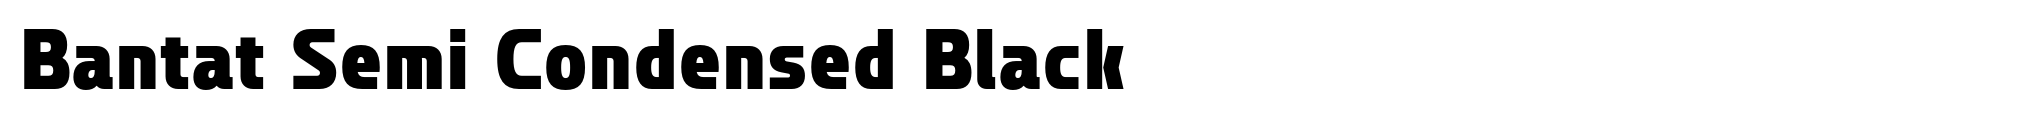 Bantat Semi Condensed Black image